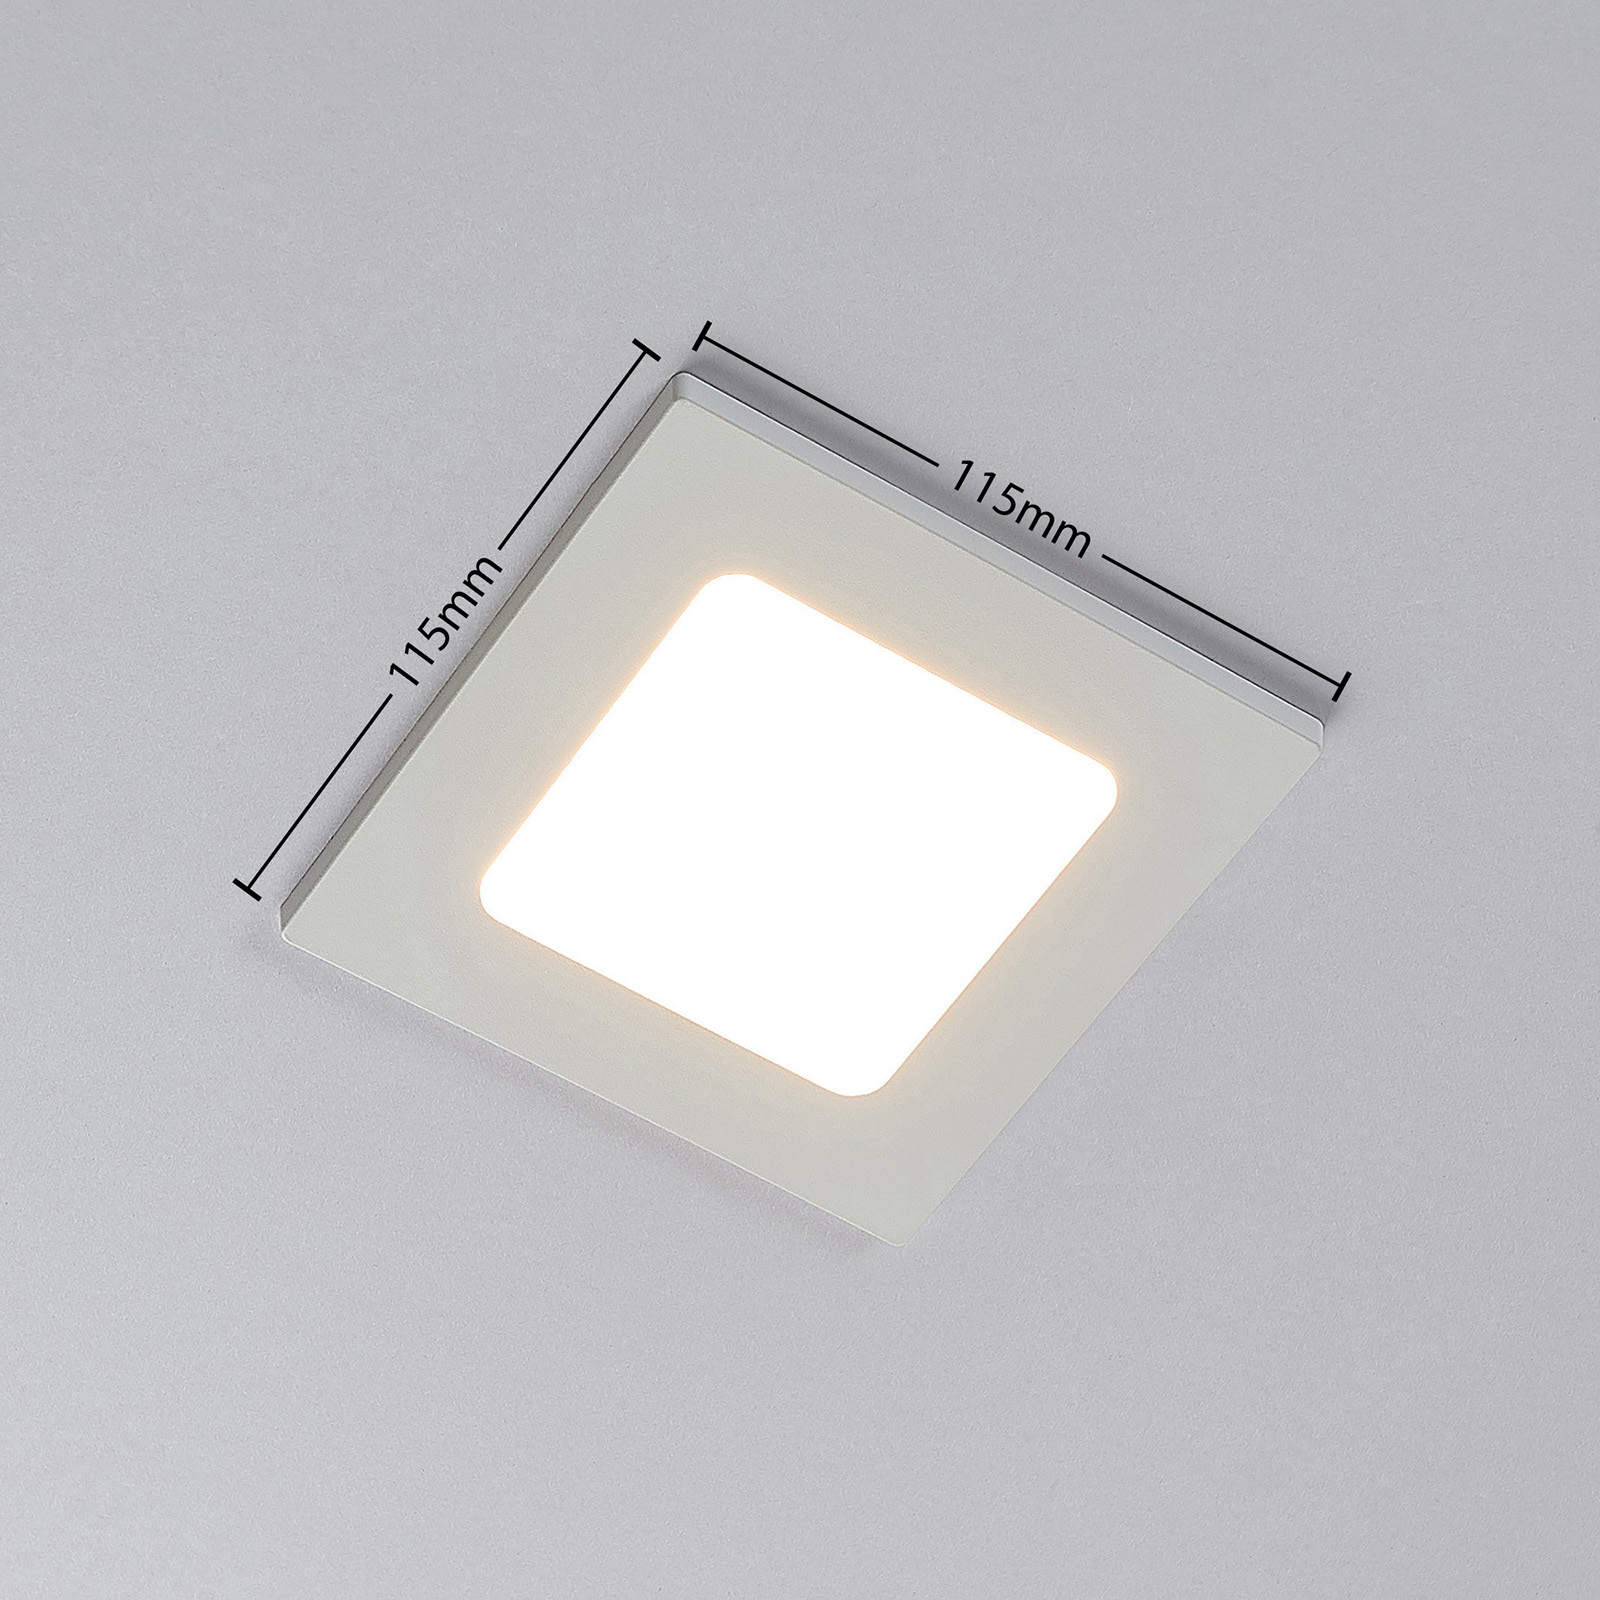 LED-innfelt spot Joki, hvit, 3 000 K kantet 11,5cm